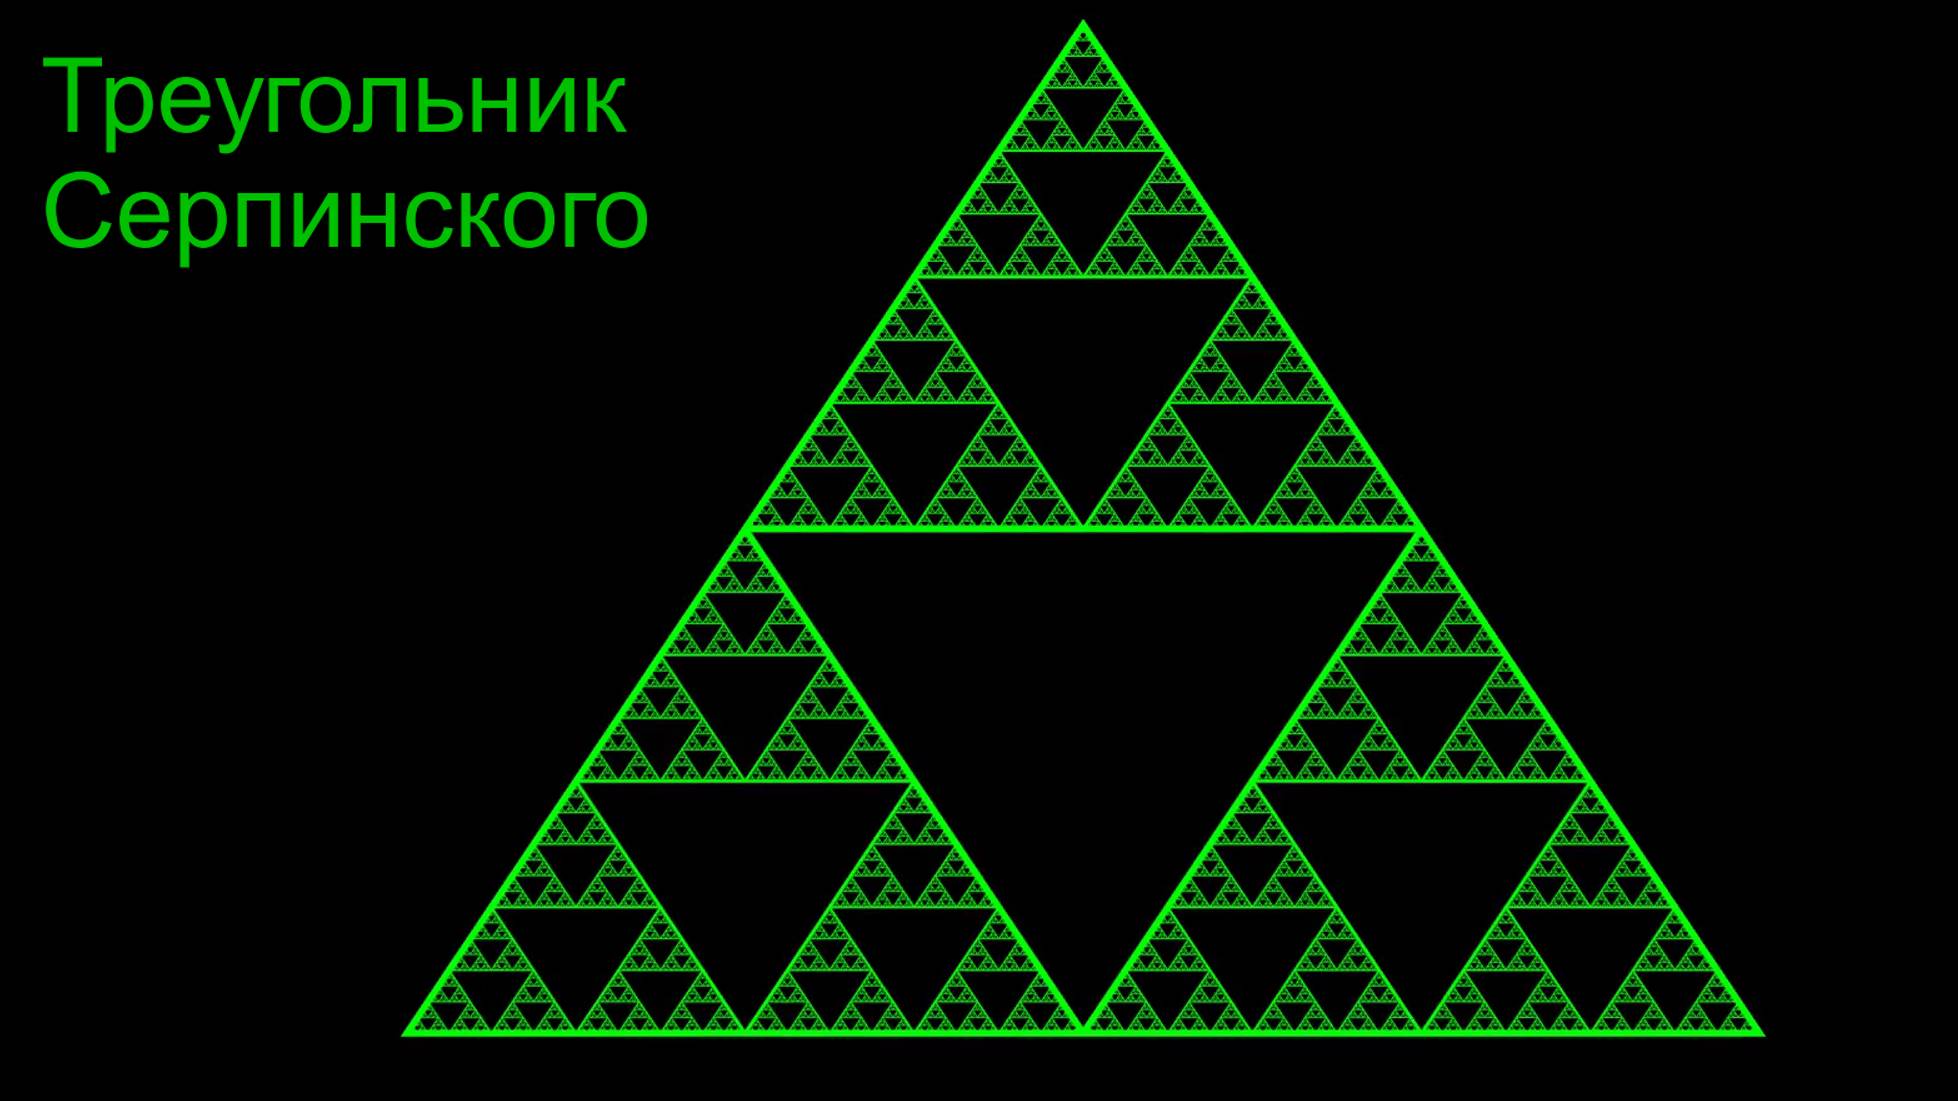 Ощути красоту математики! Фрактал Треугольник Серпинского.